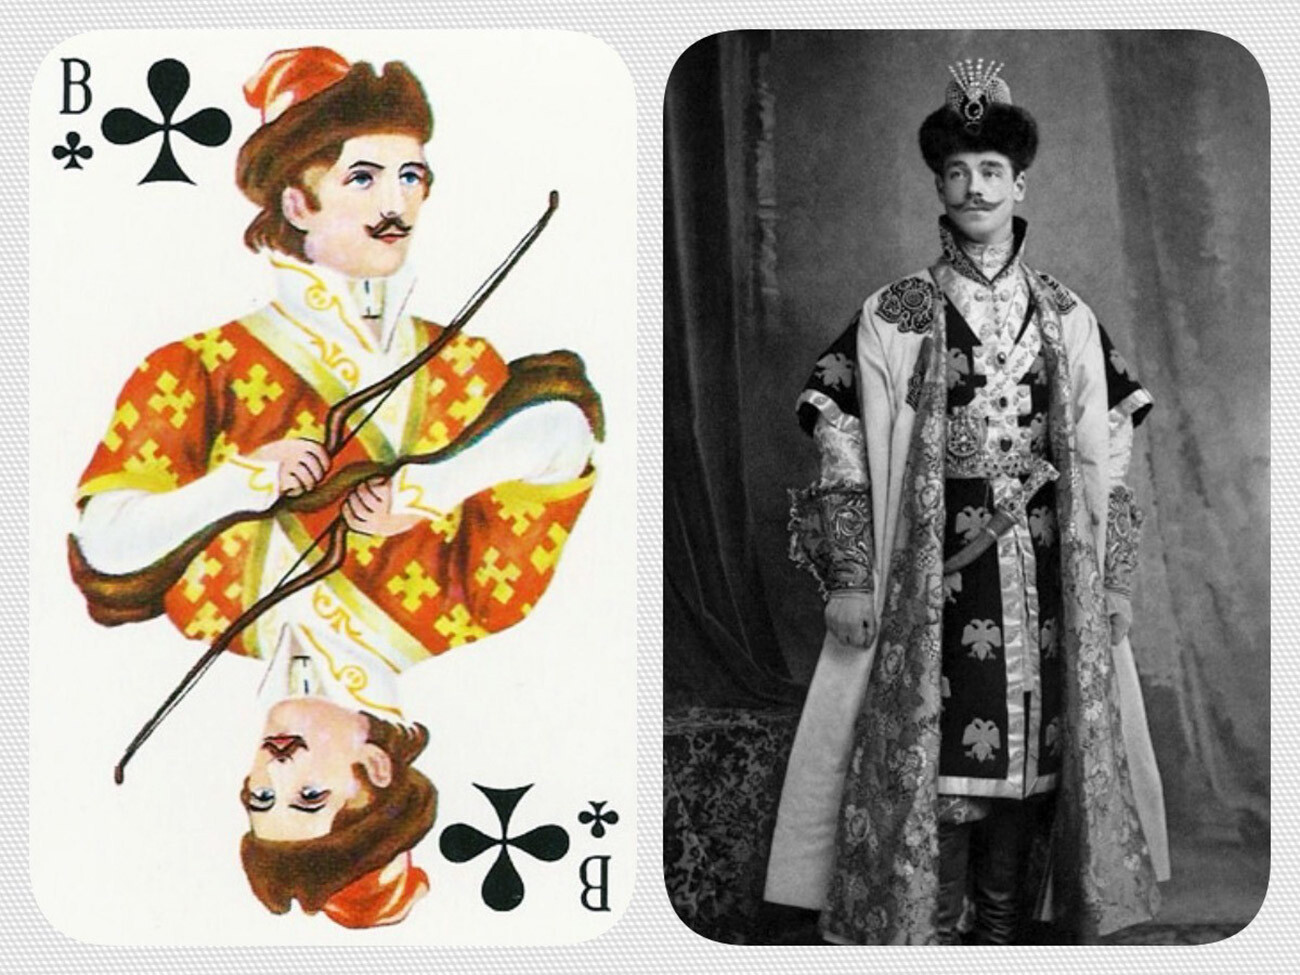 Mihail na kostimiranom balu 1903. godine poslužio je kao prototip za dečka tref u čuvenim kartama 